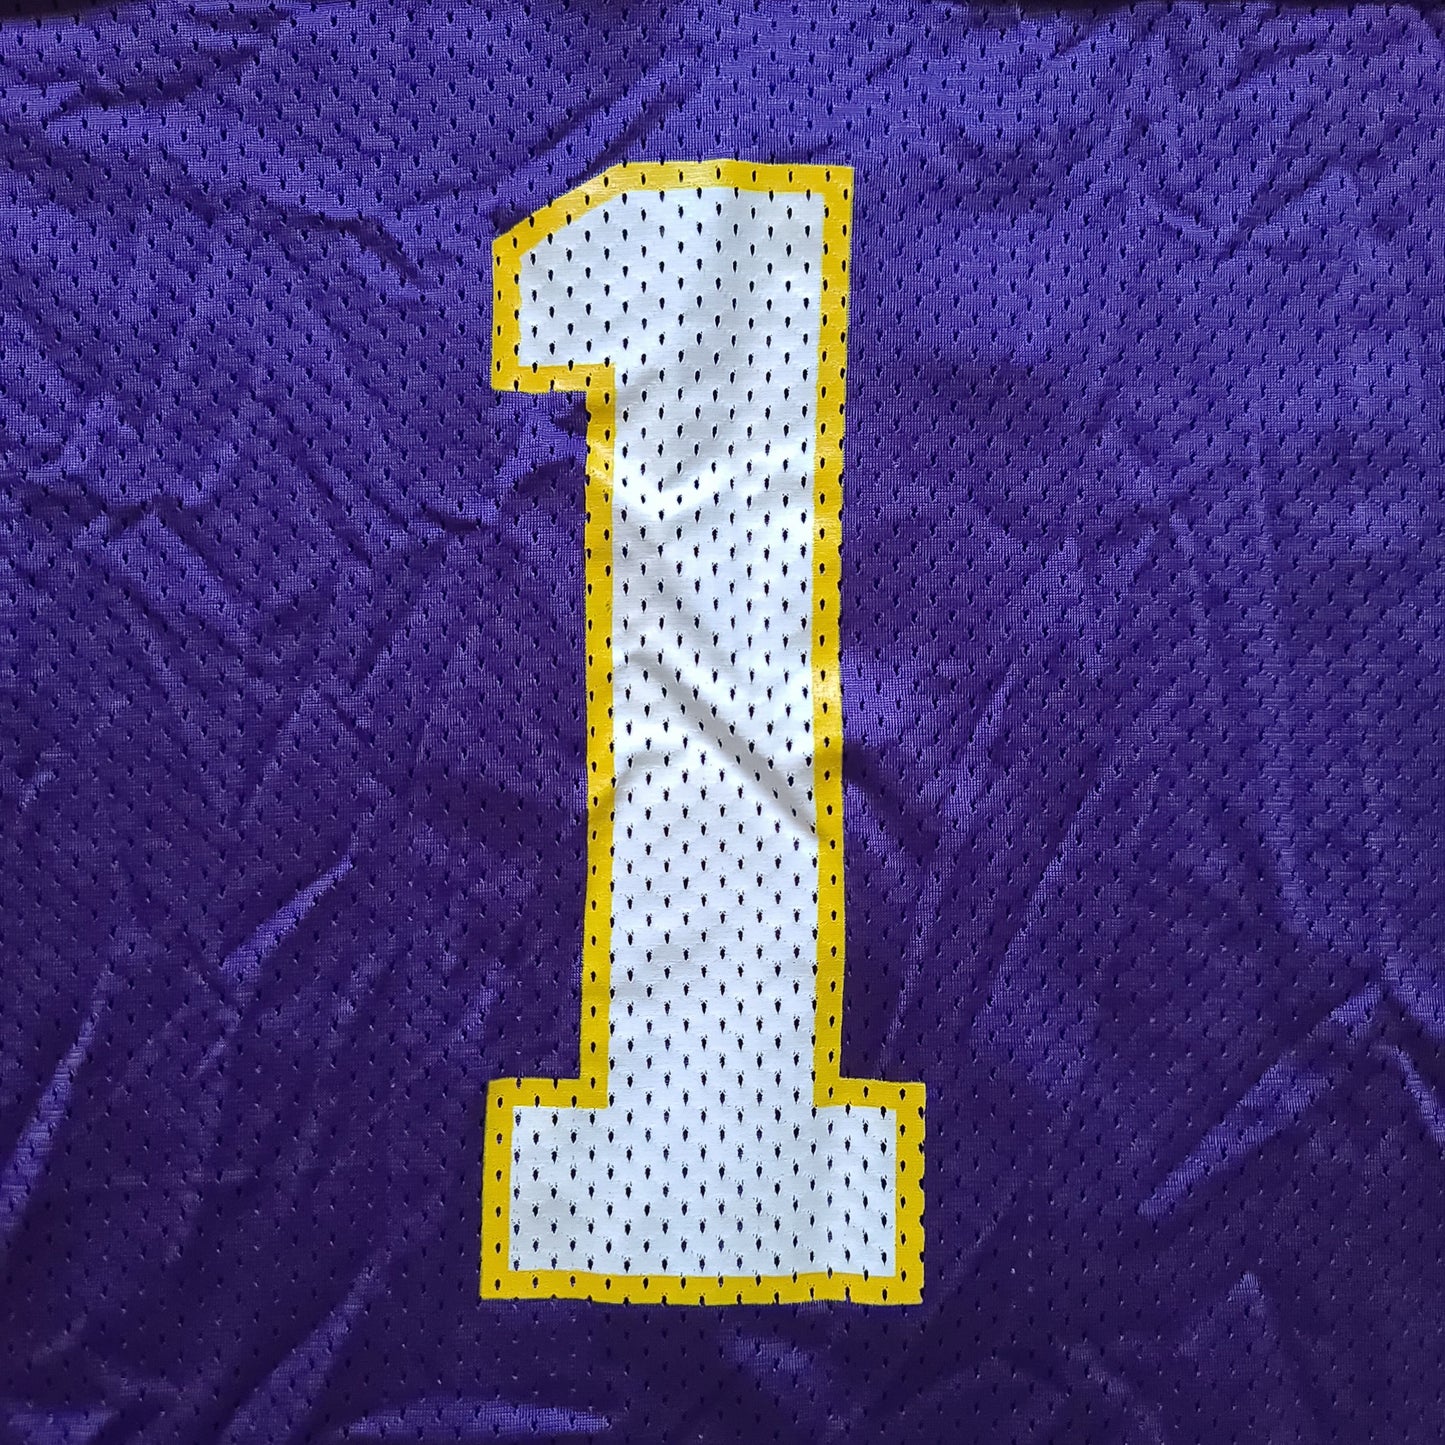 Vintage Warren Moon Minnesota Vikings Reebok Purple Football Jersey